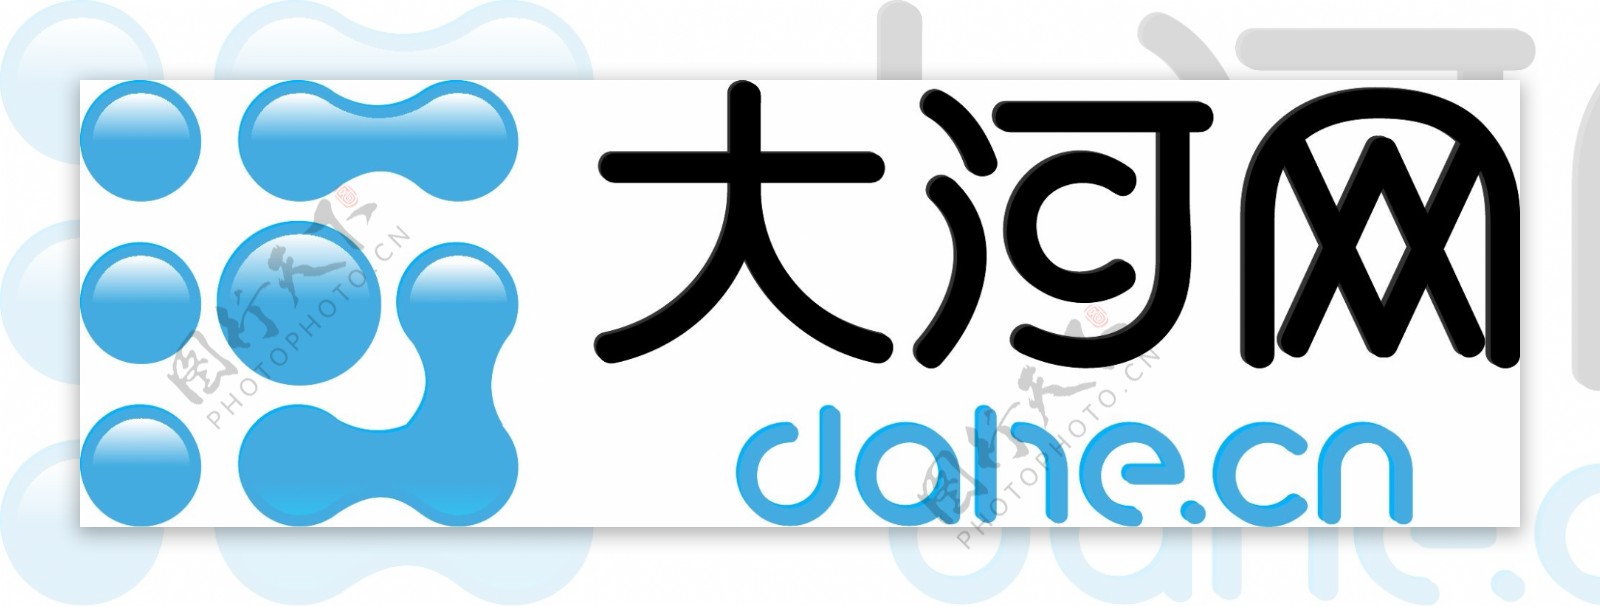 大河网logo